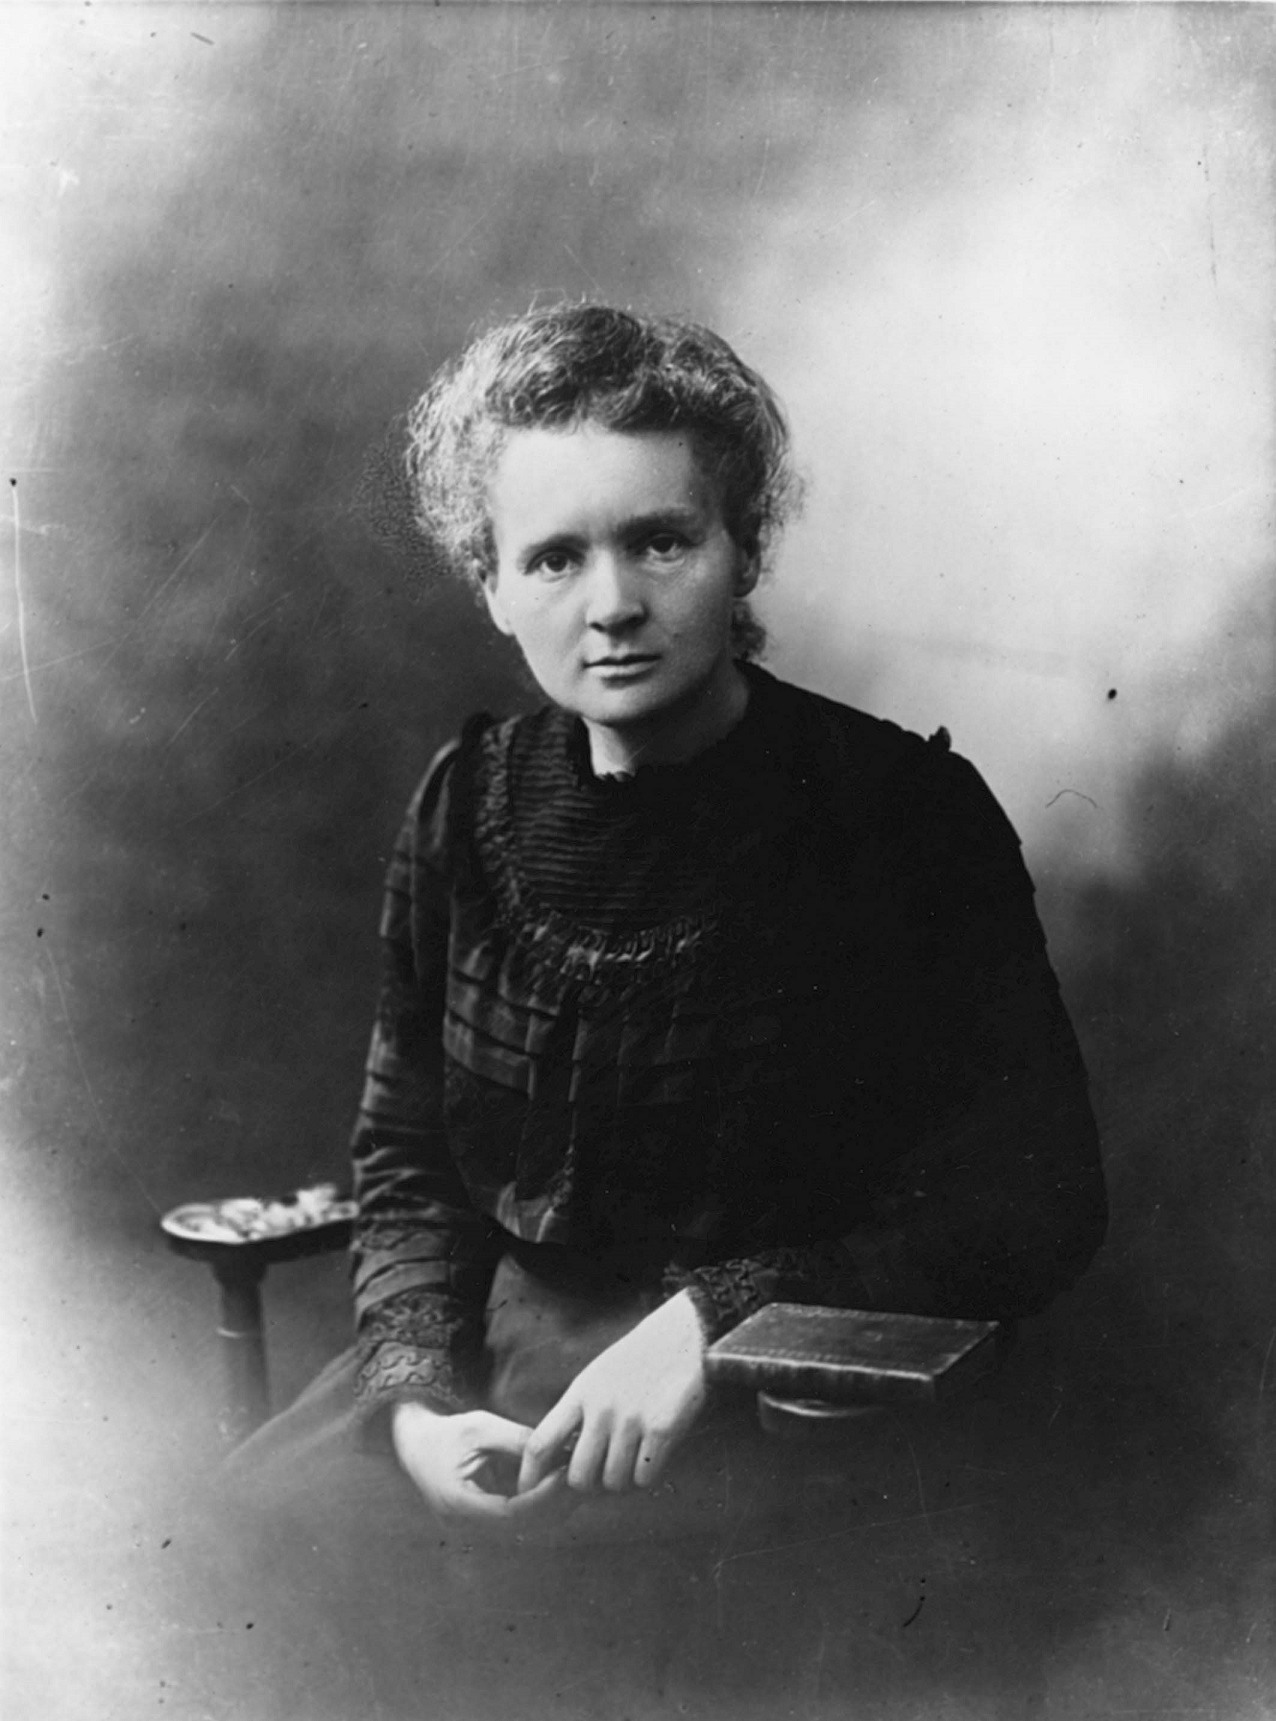 Мария Склодовская-Кюри. Фото 1900 г. Источник https://upload.wikimedia.org/